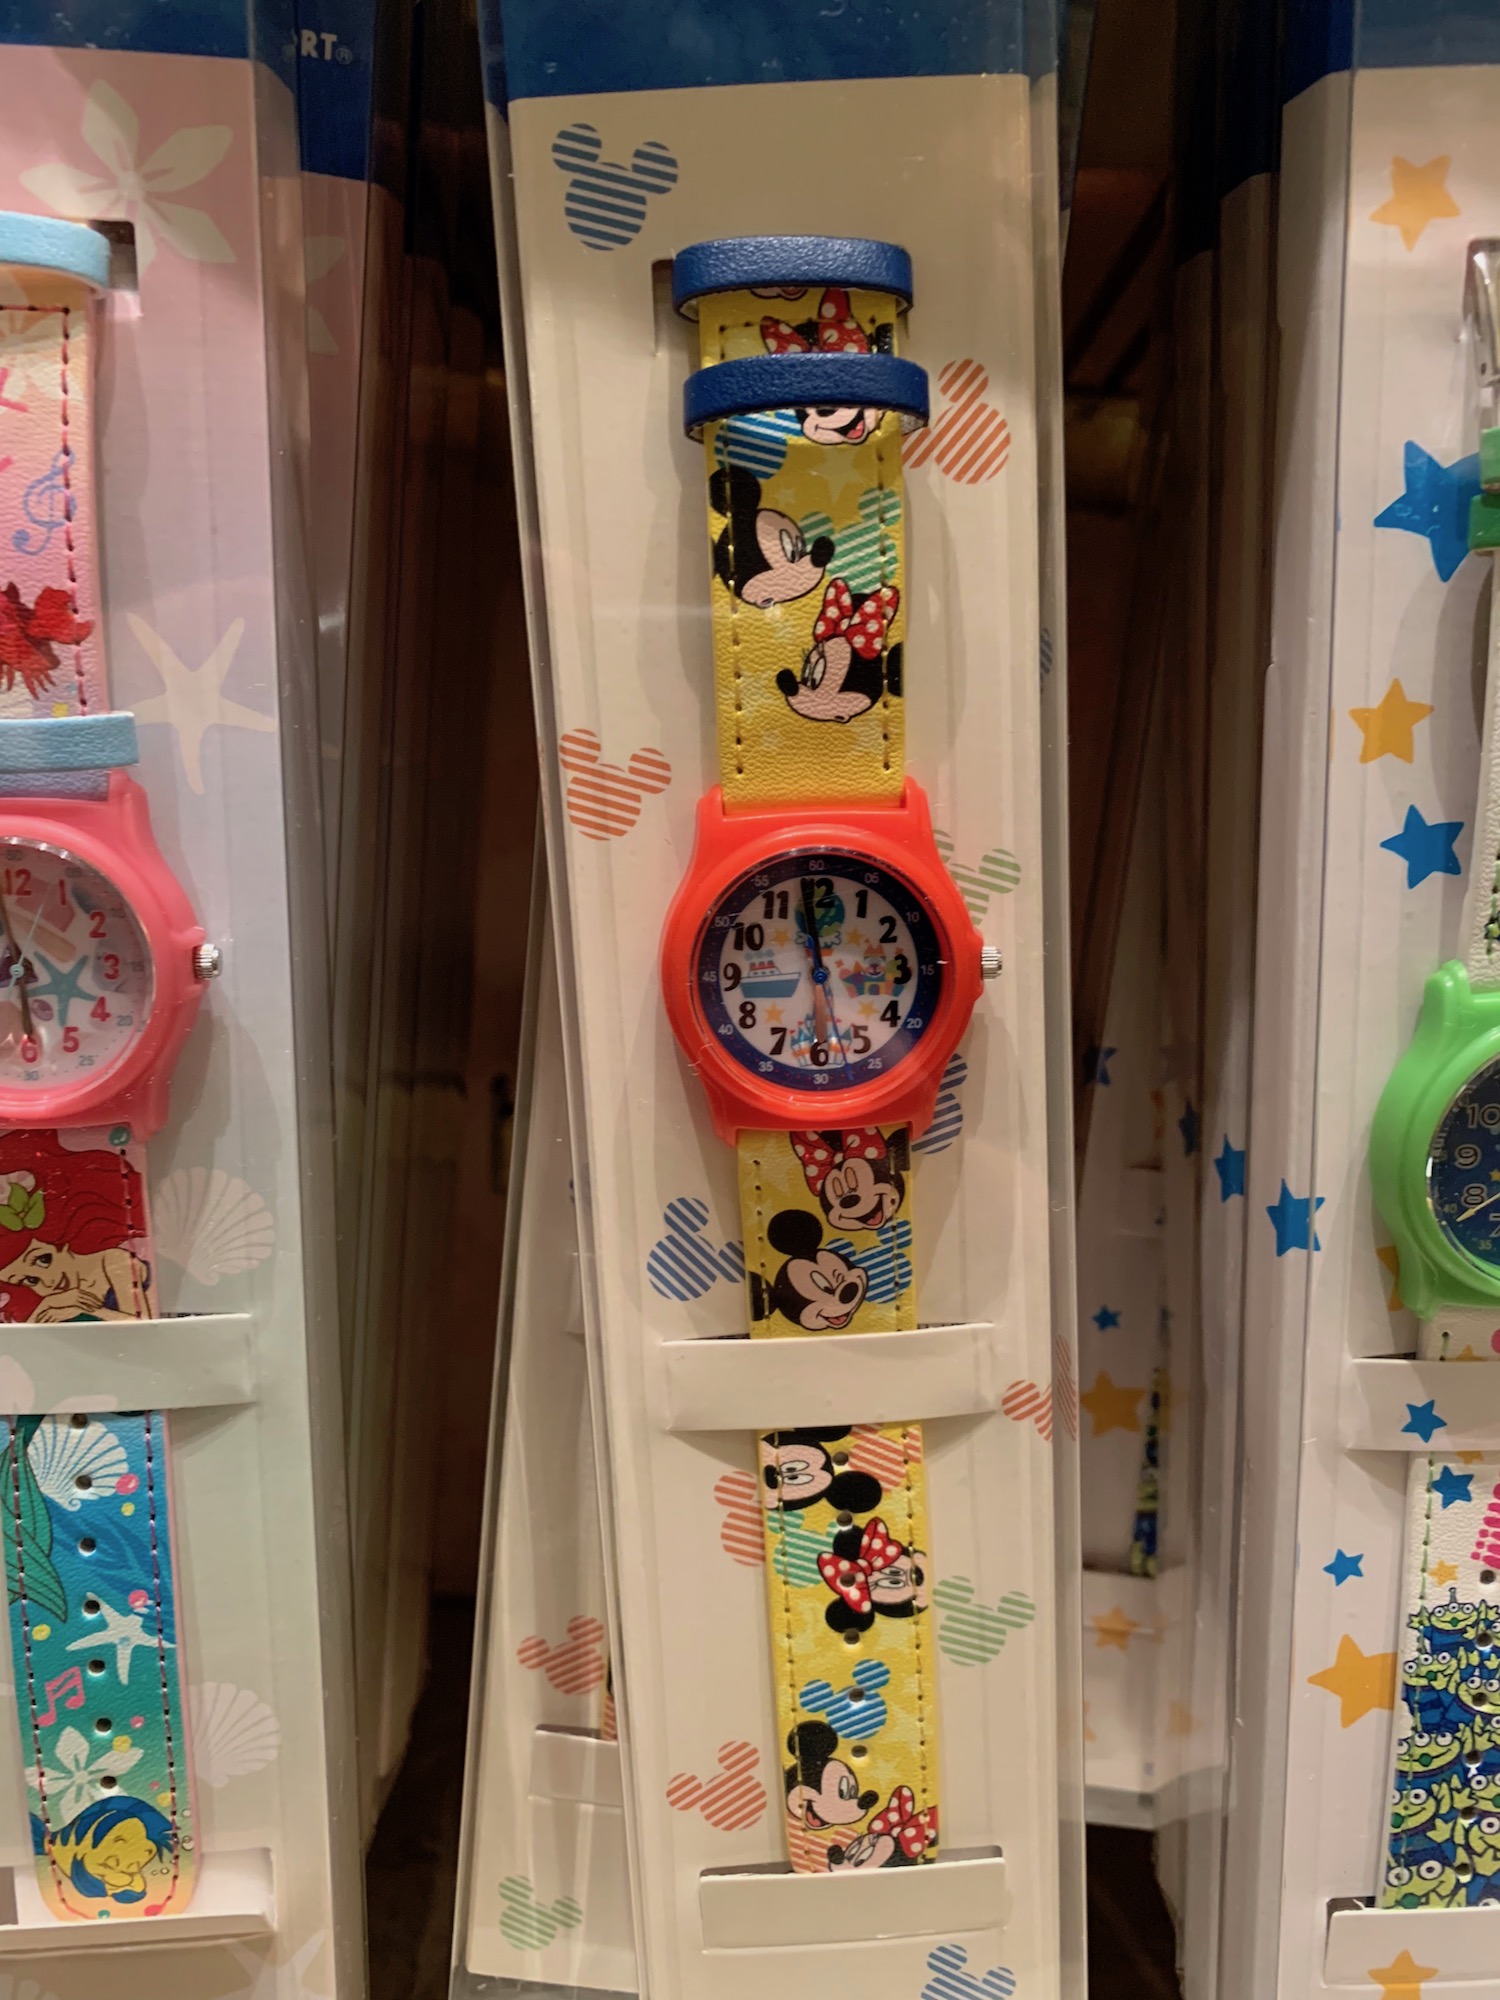 キッズ向け腕時計！東京ディズニーリゾート「ウォッチキッズ」 | 気になるディズニーブログ